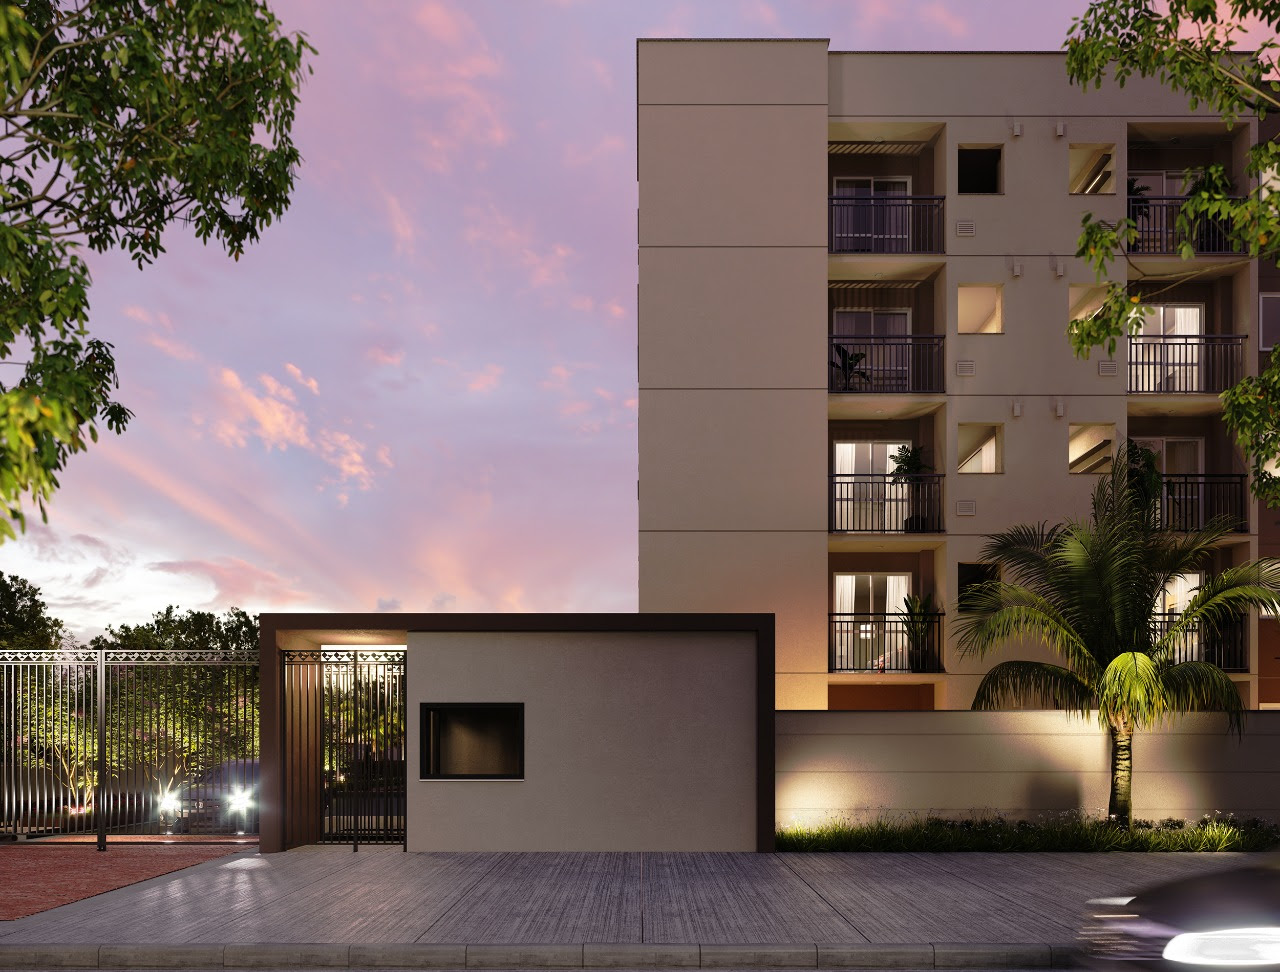 Andaraí ganha impulso imobiliário com novos lançamentos residenciais